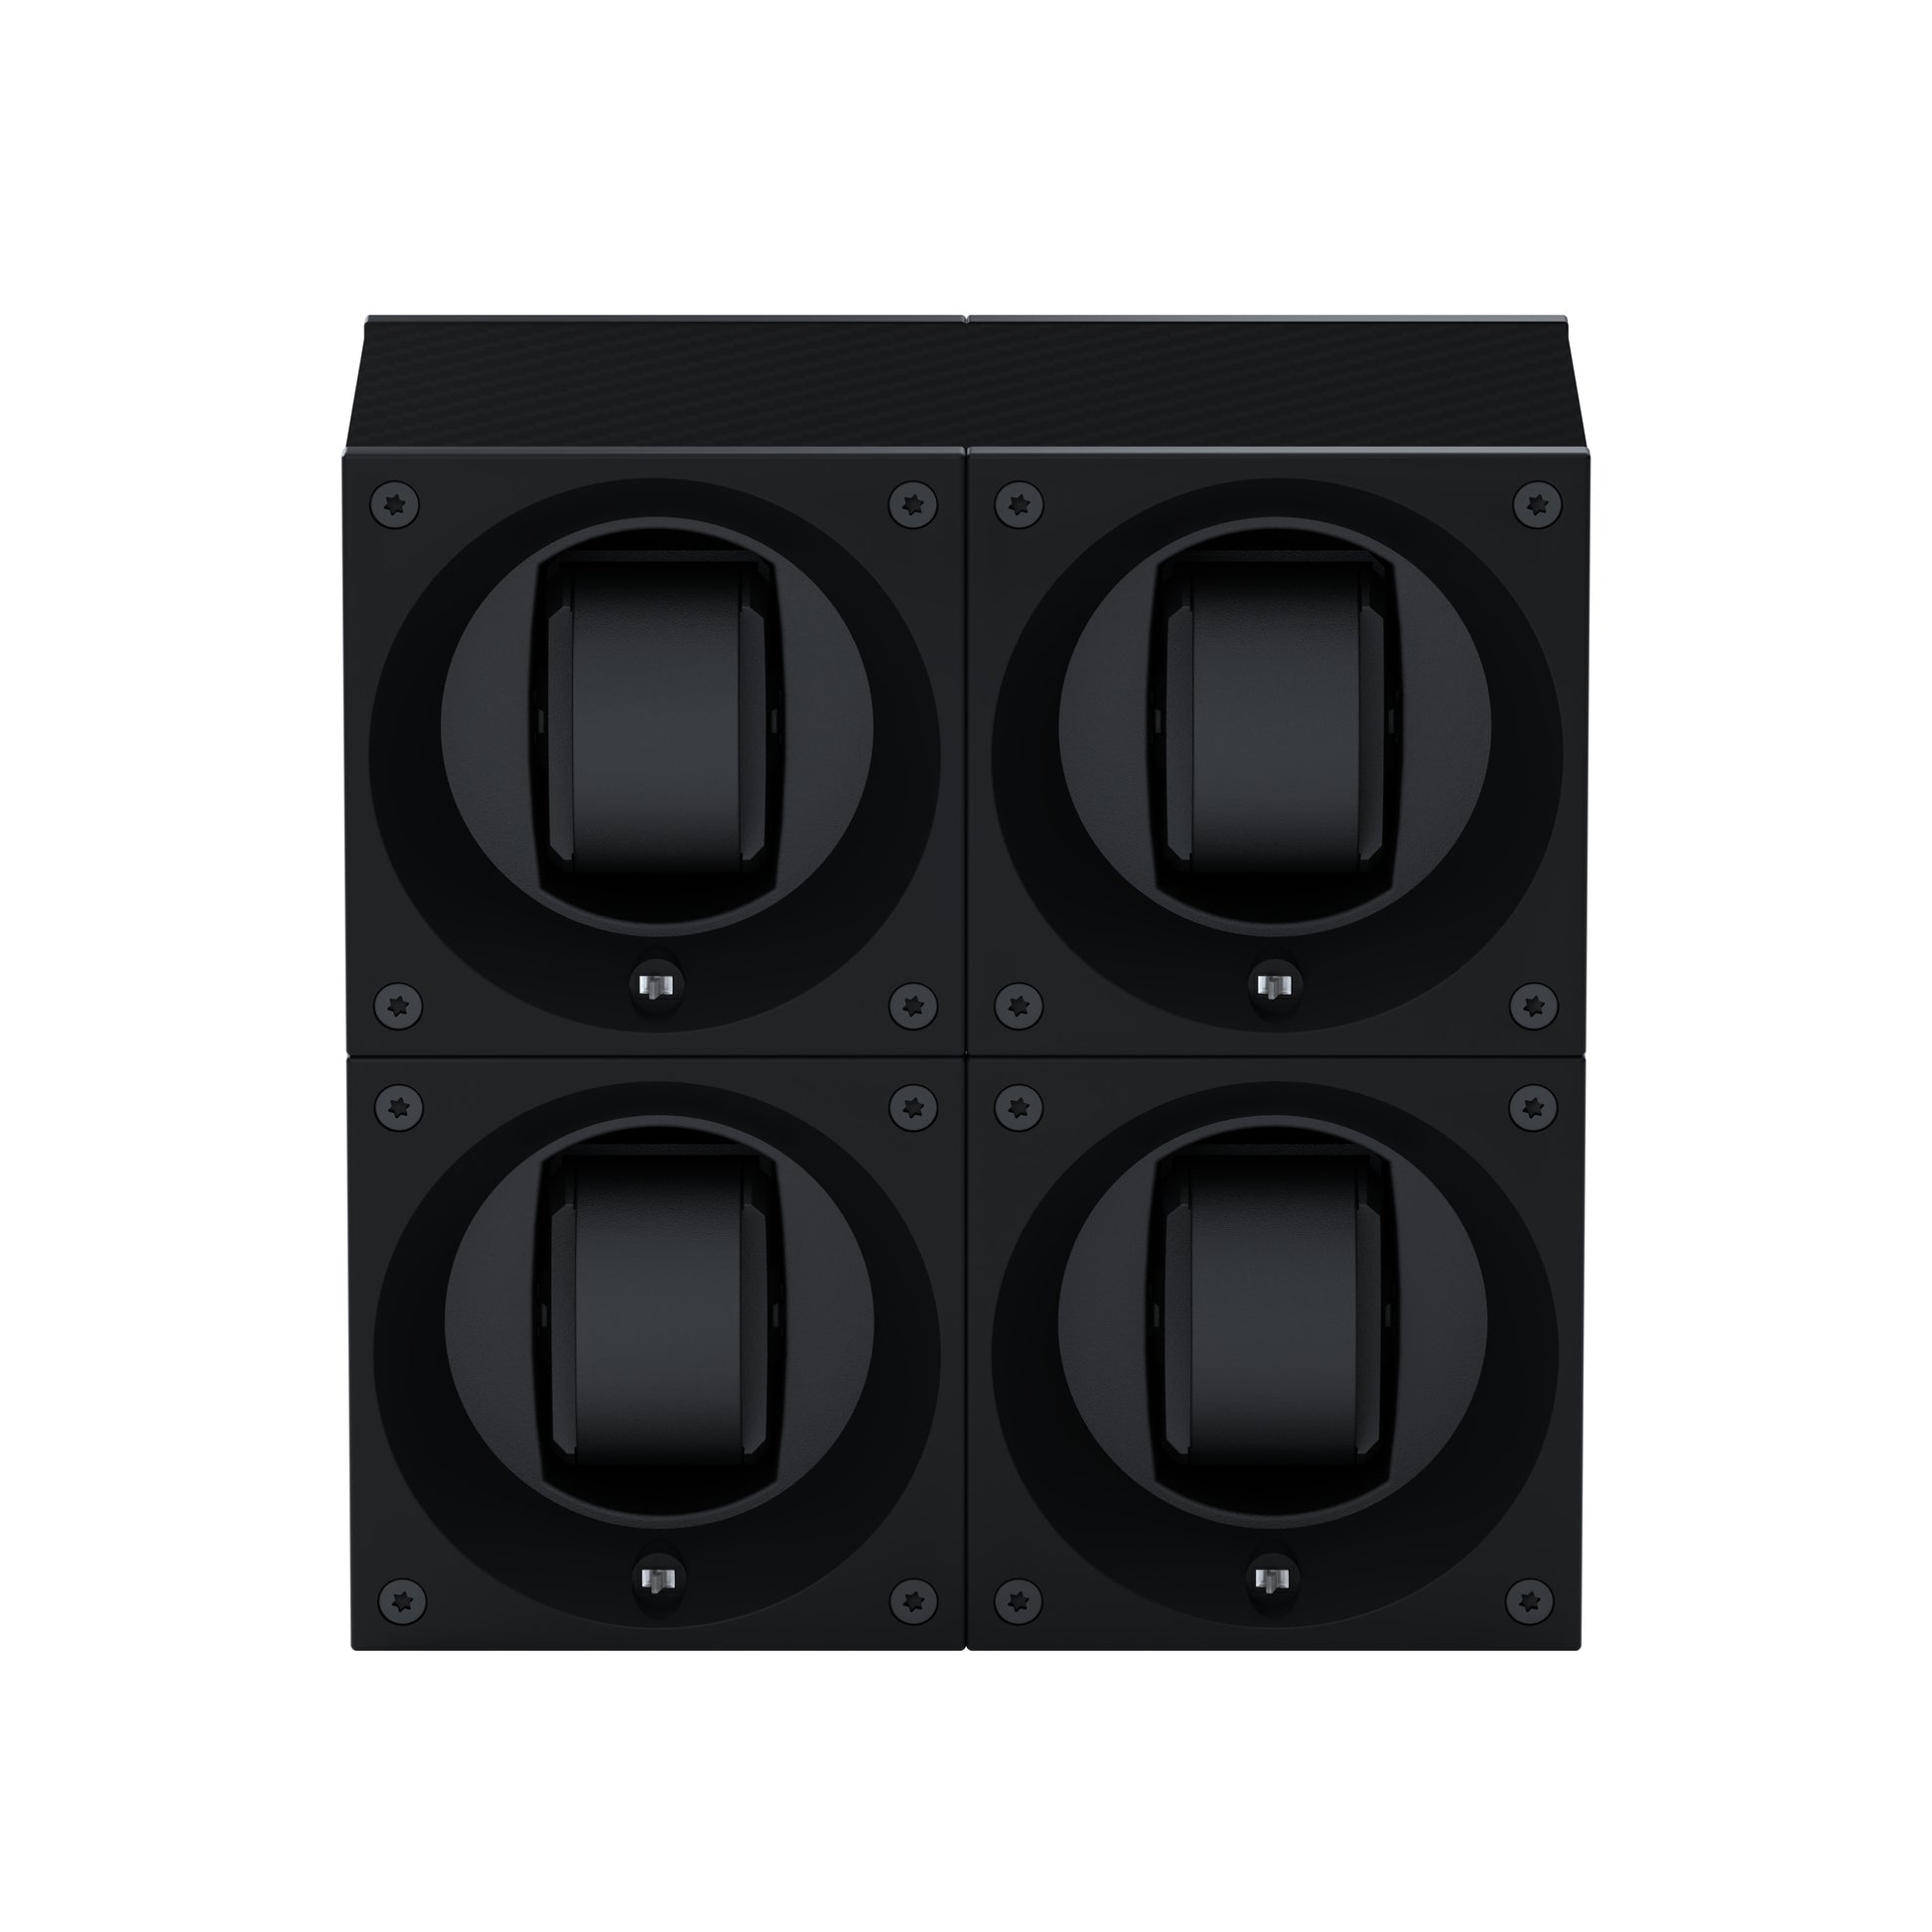 Masterbox 4 montres Carbone : écrin rotatif pour montre automatique